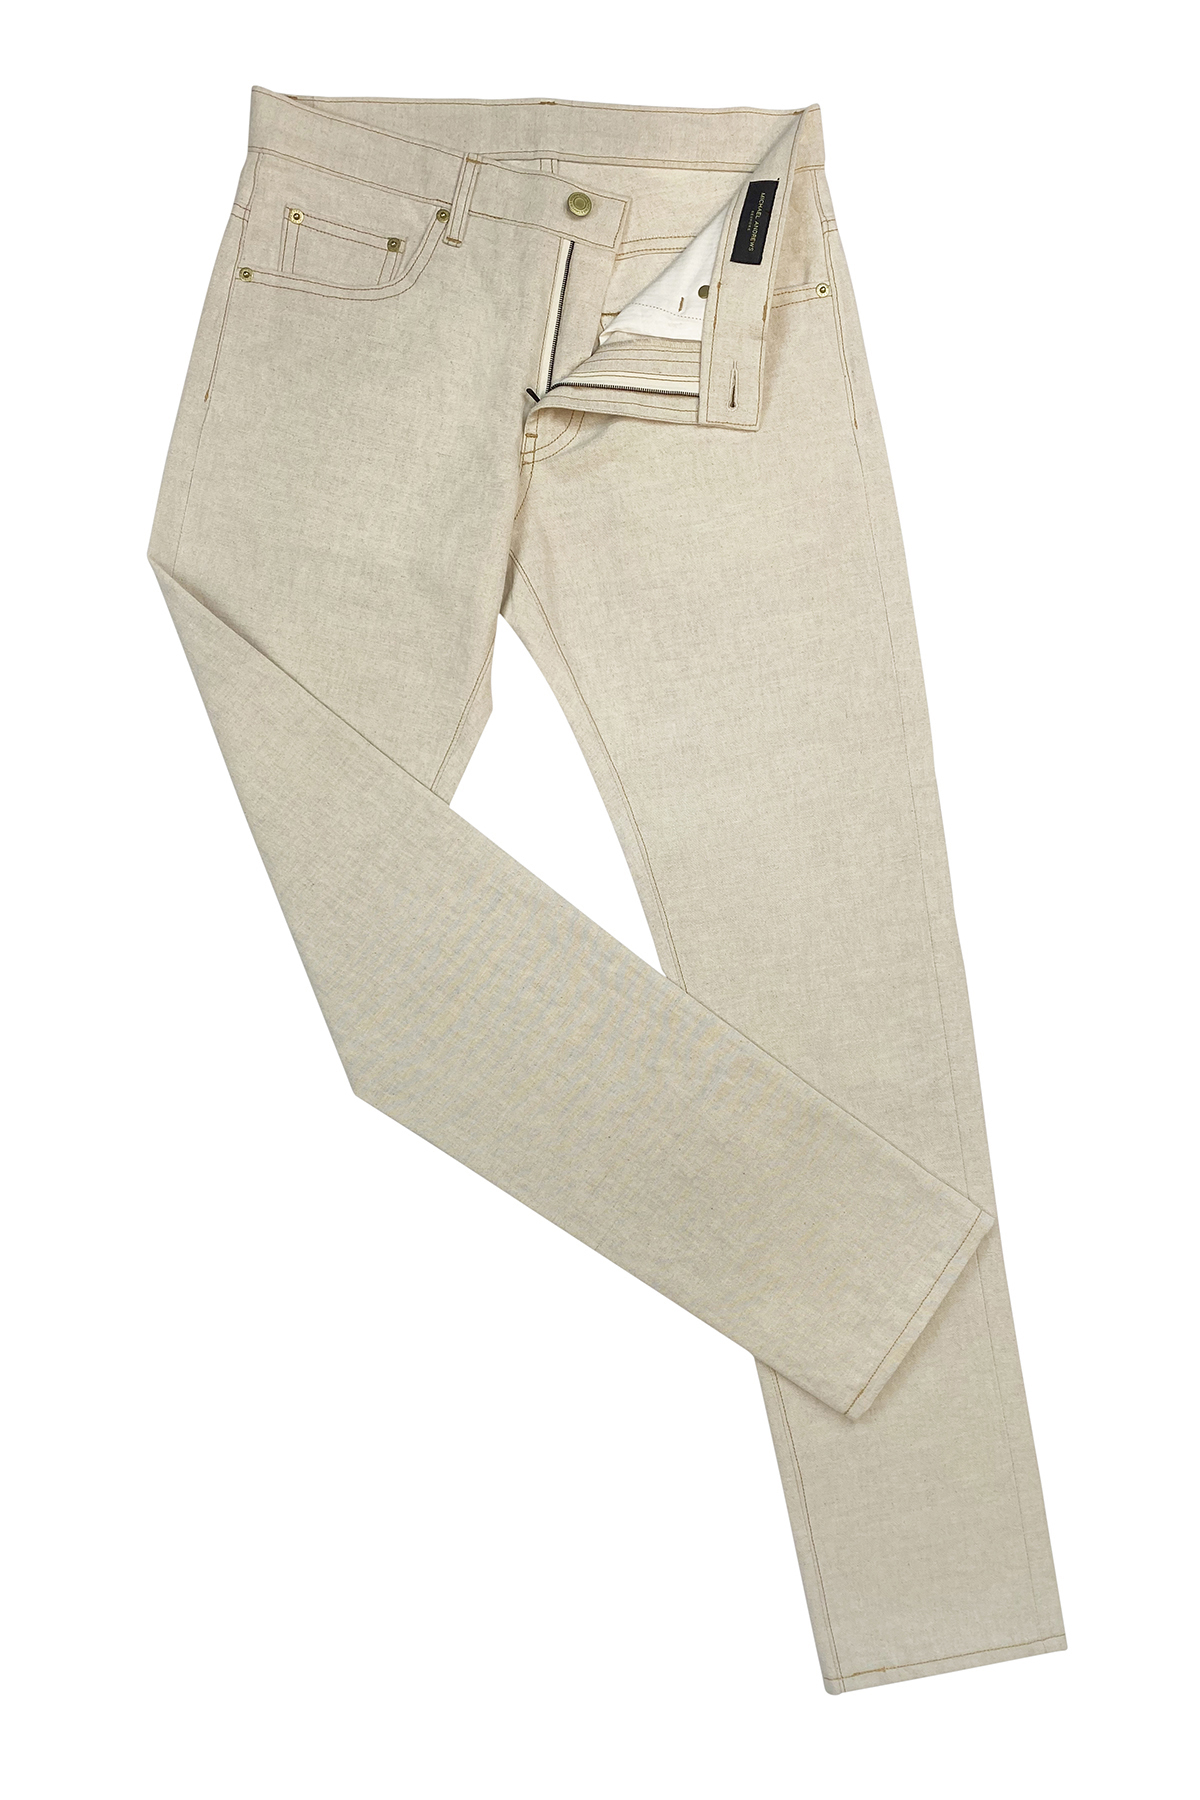 Natural Cotton/Linen Canvas Jeans